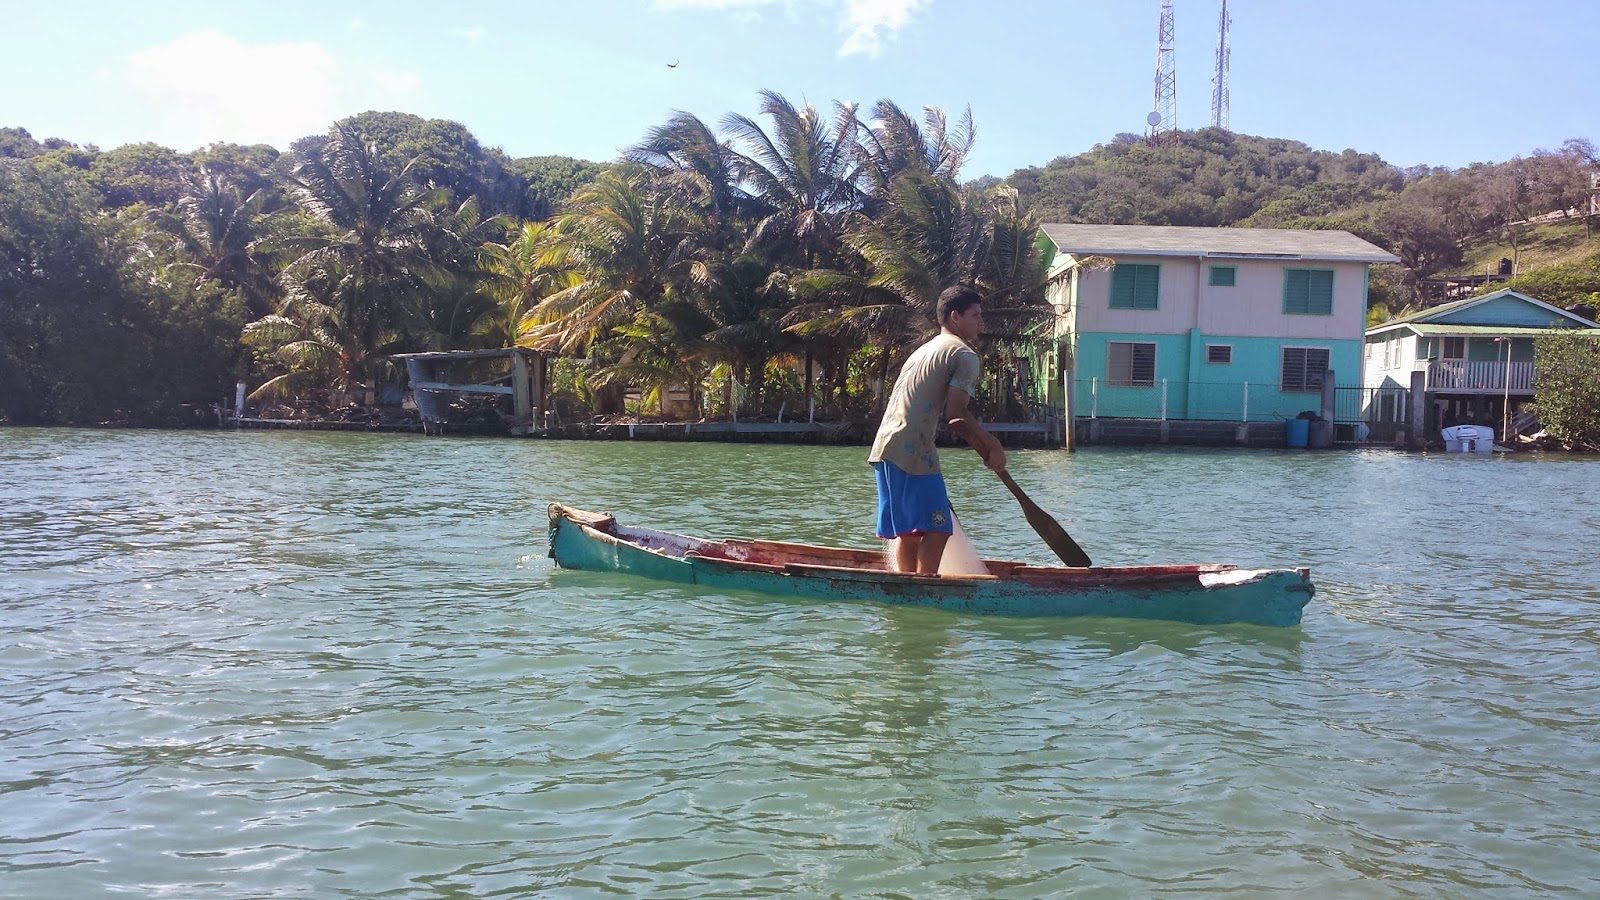 Remaxvipbelize: Random Honduran fisherman